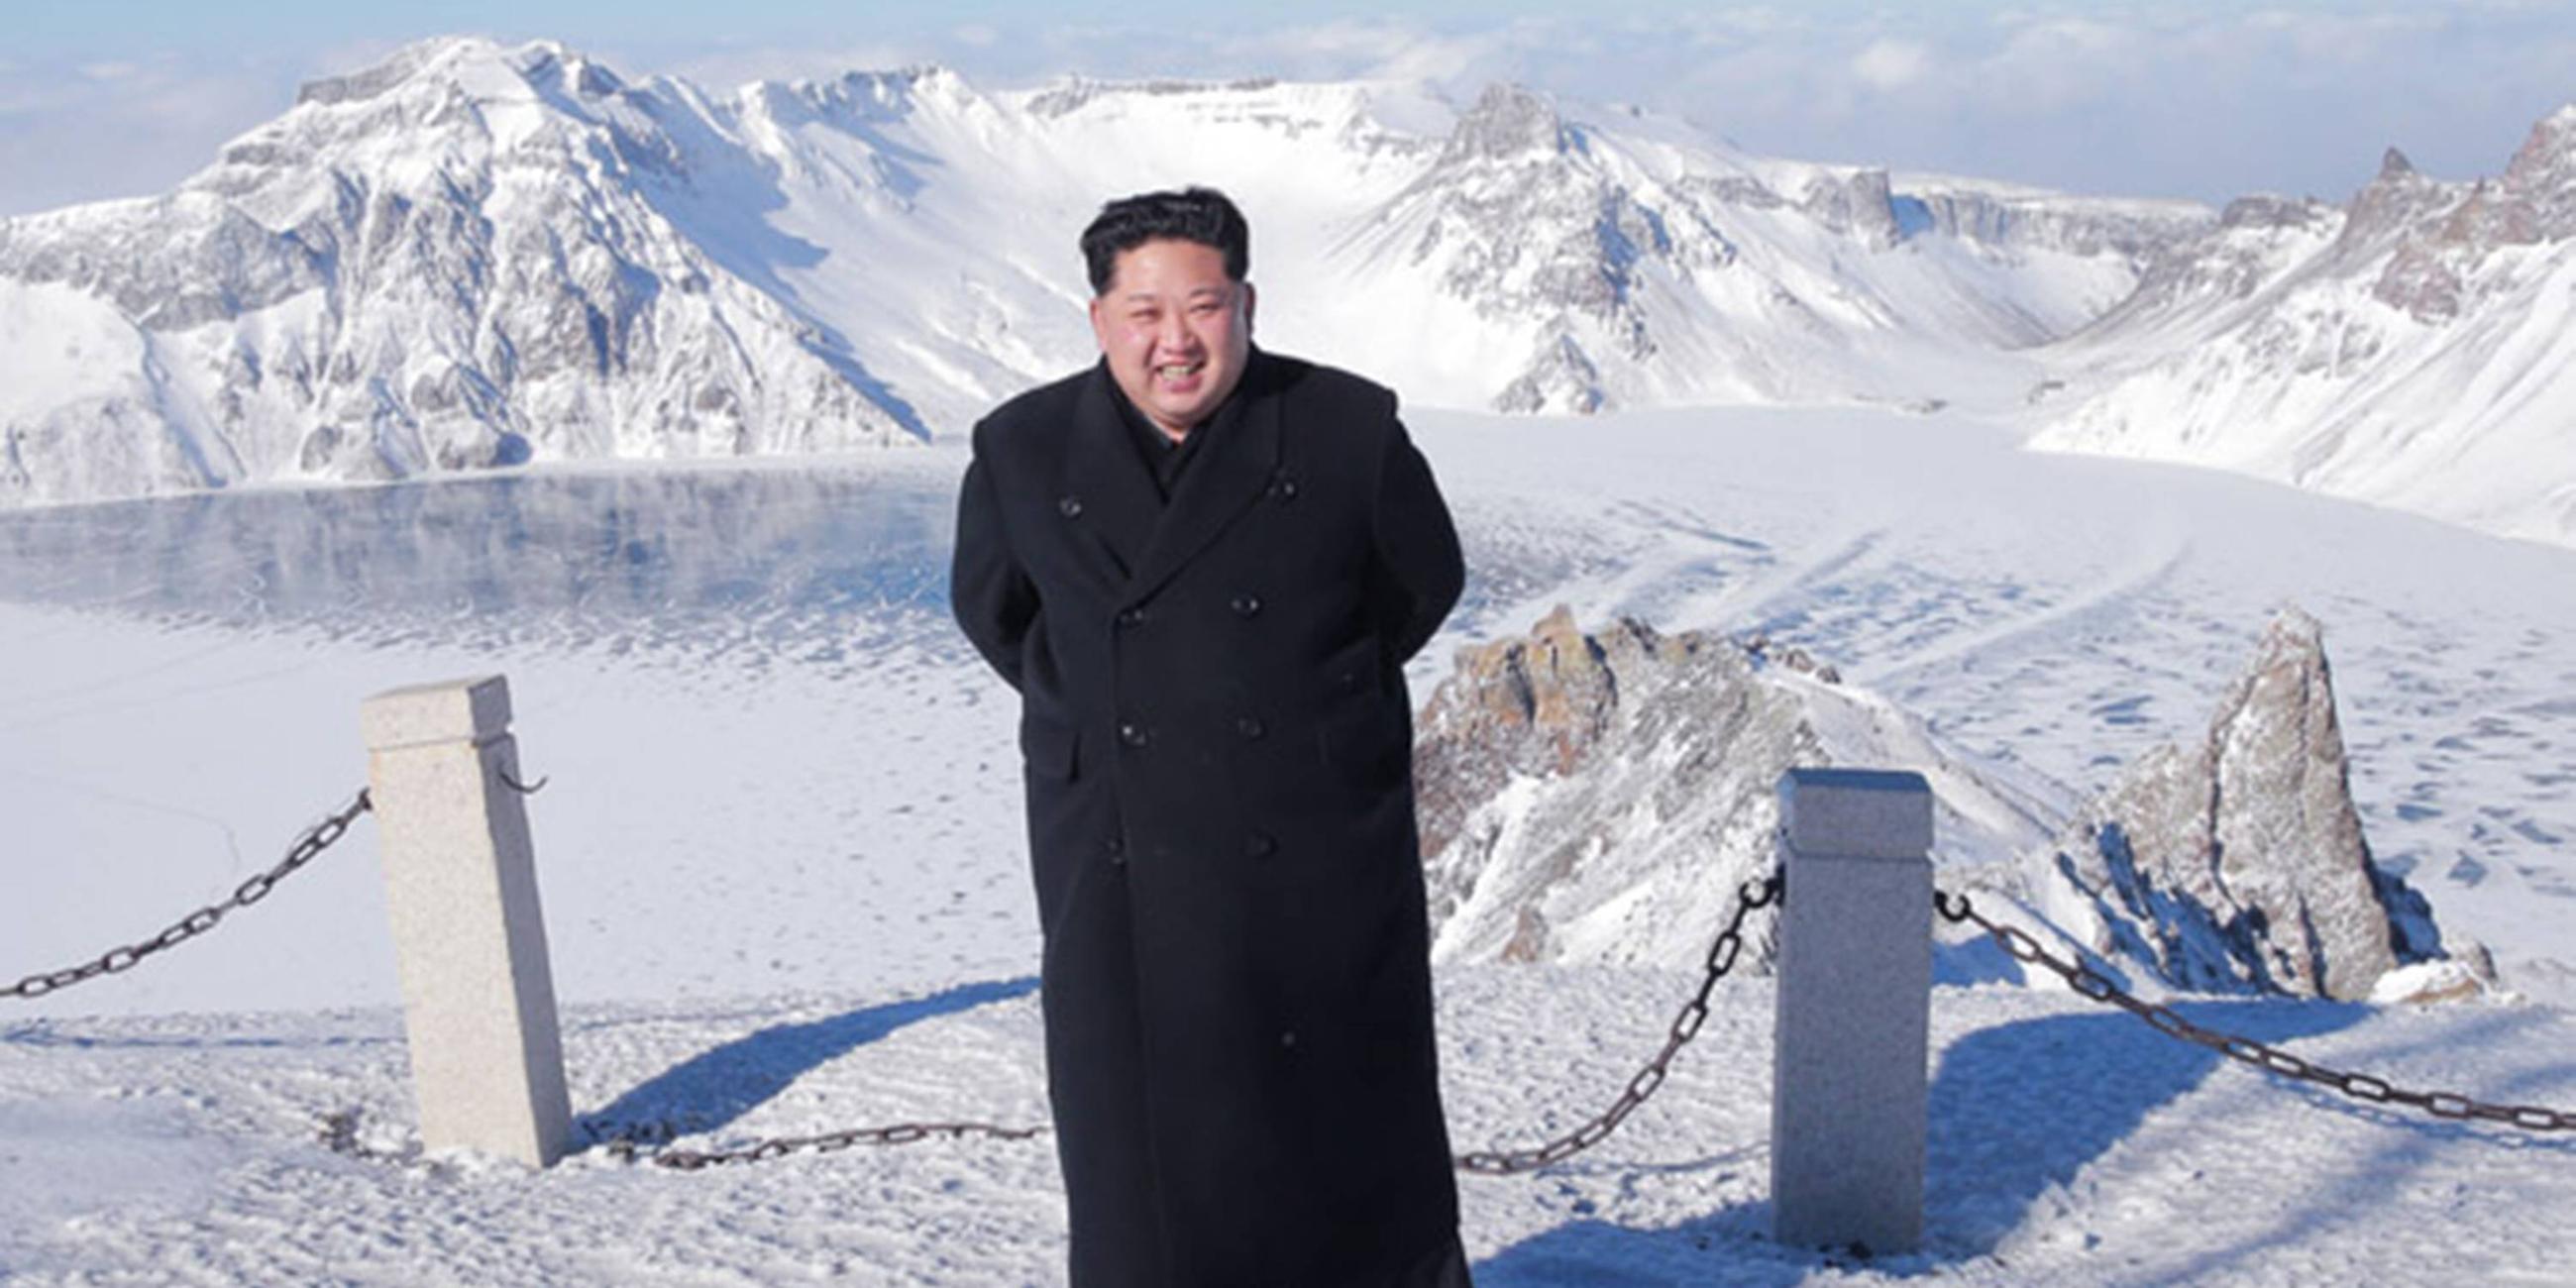 Kim Jong-un bei Besichtigungstour zum Mount Paektu, einem aktiven Vulkan an der Grenze zwischen Nordkorea und China- 2017